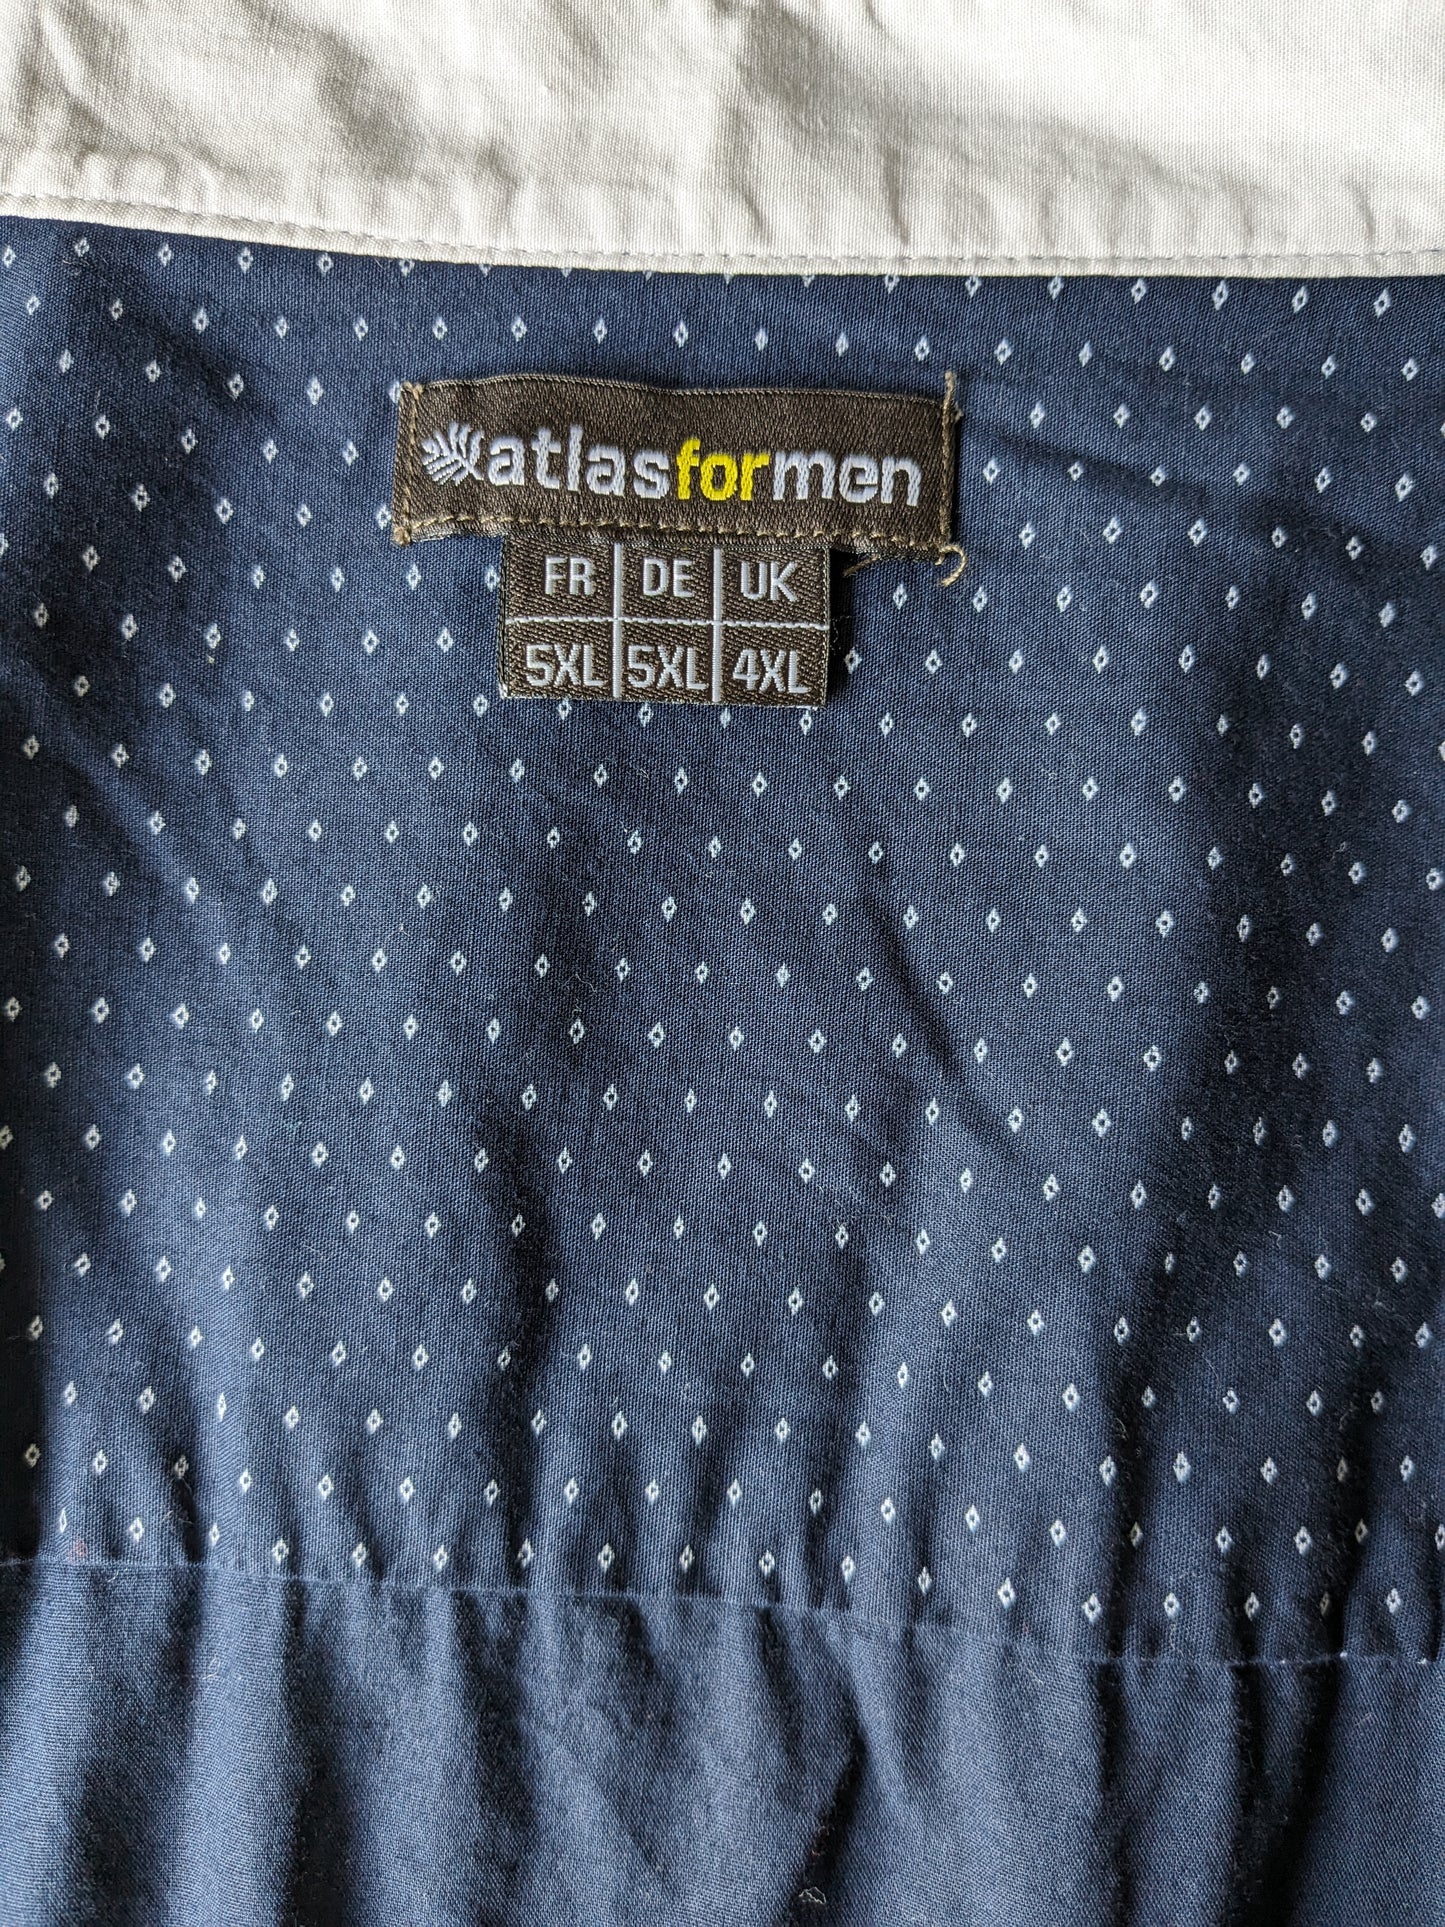 Atlas for Men overhemd met korte kraag. Blauw Witte print. Maat 5XL / XXXXXL. Comfort Fit.